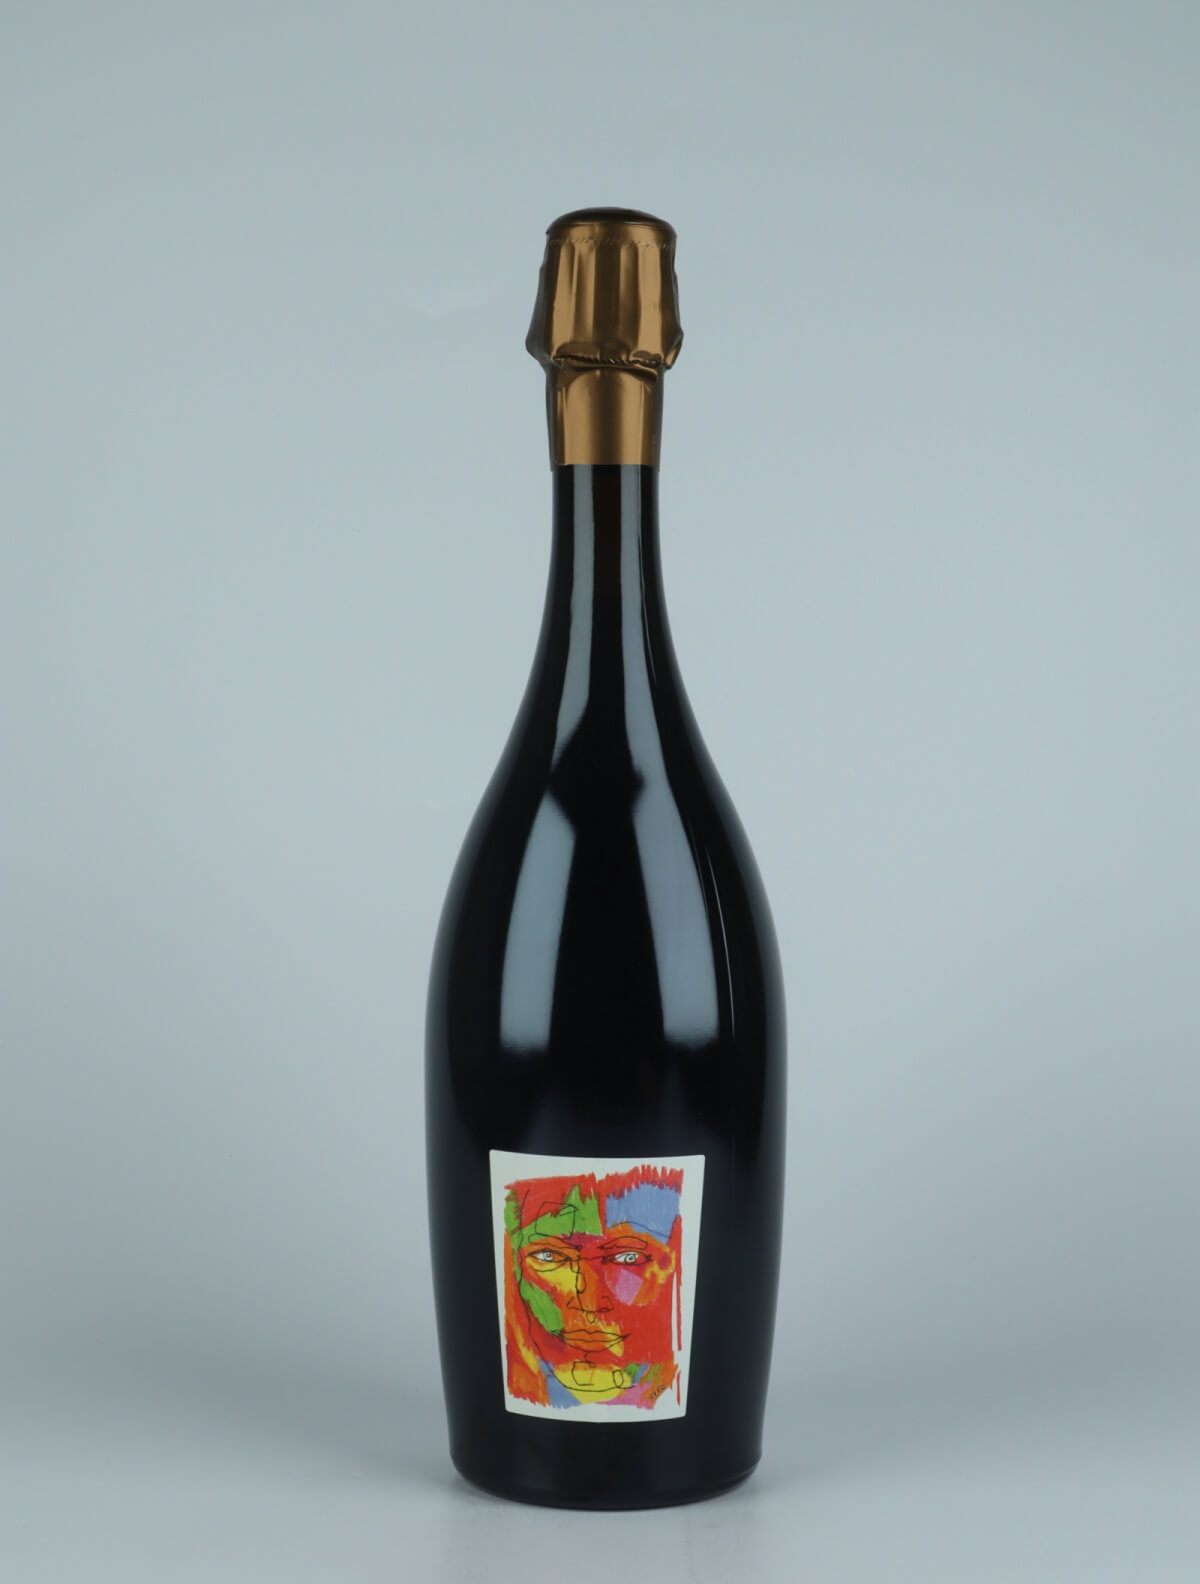 En flaske 2015 Logos Rosé de Saignée - Les Paquis - Brut Nature Mousserende fra Stroebel, Champagne i Frankrig